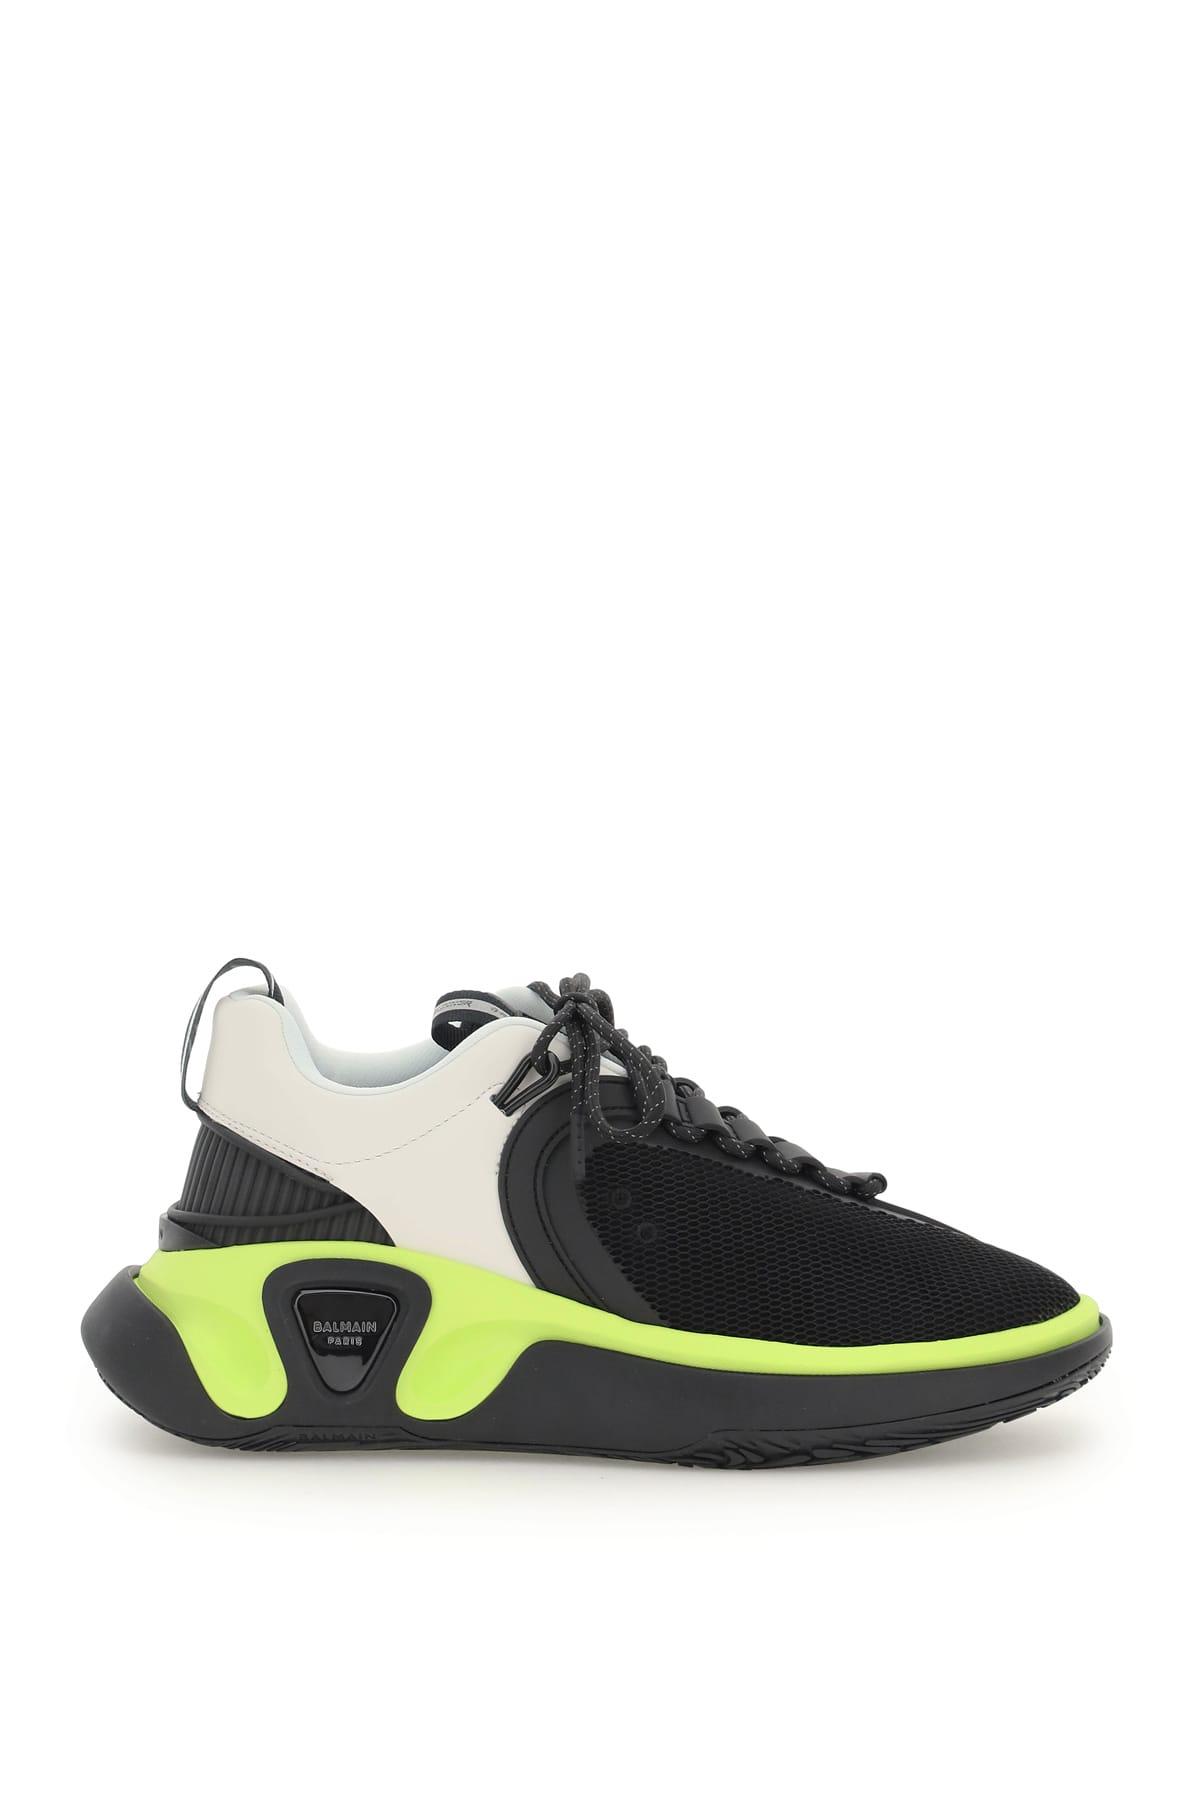 Balmain Rubber B-runner Sneakers in Black for Men - Lyst